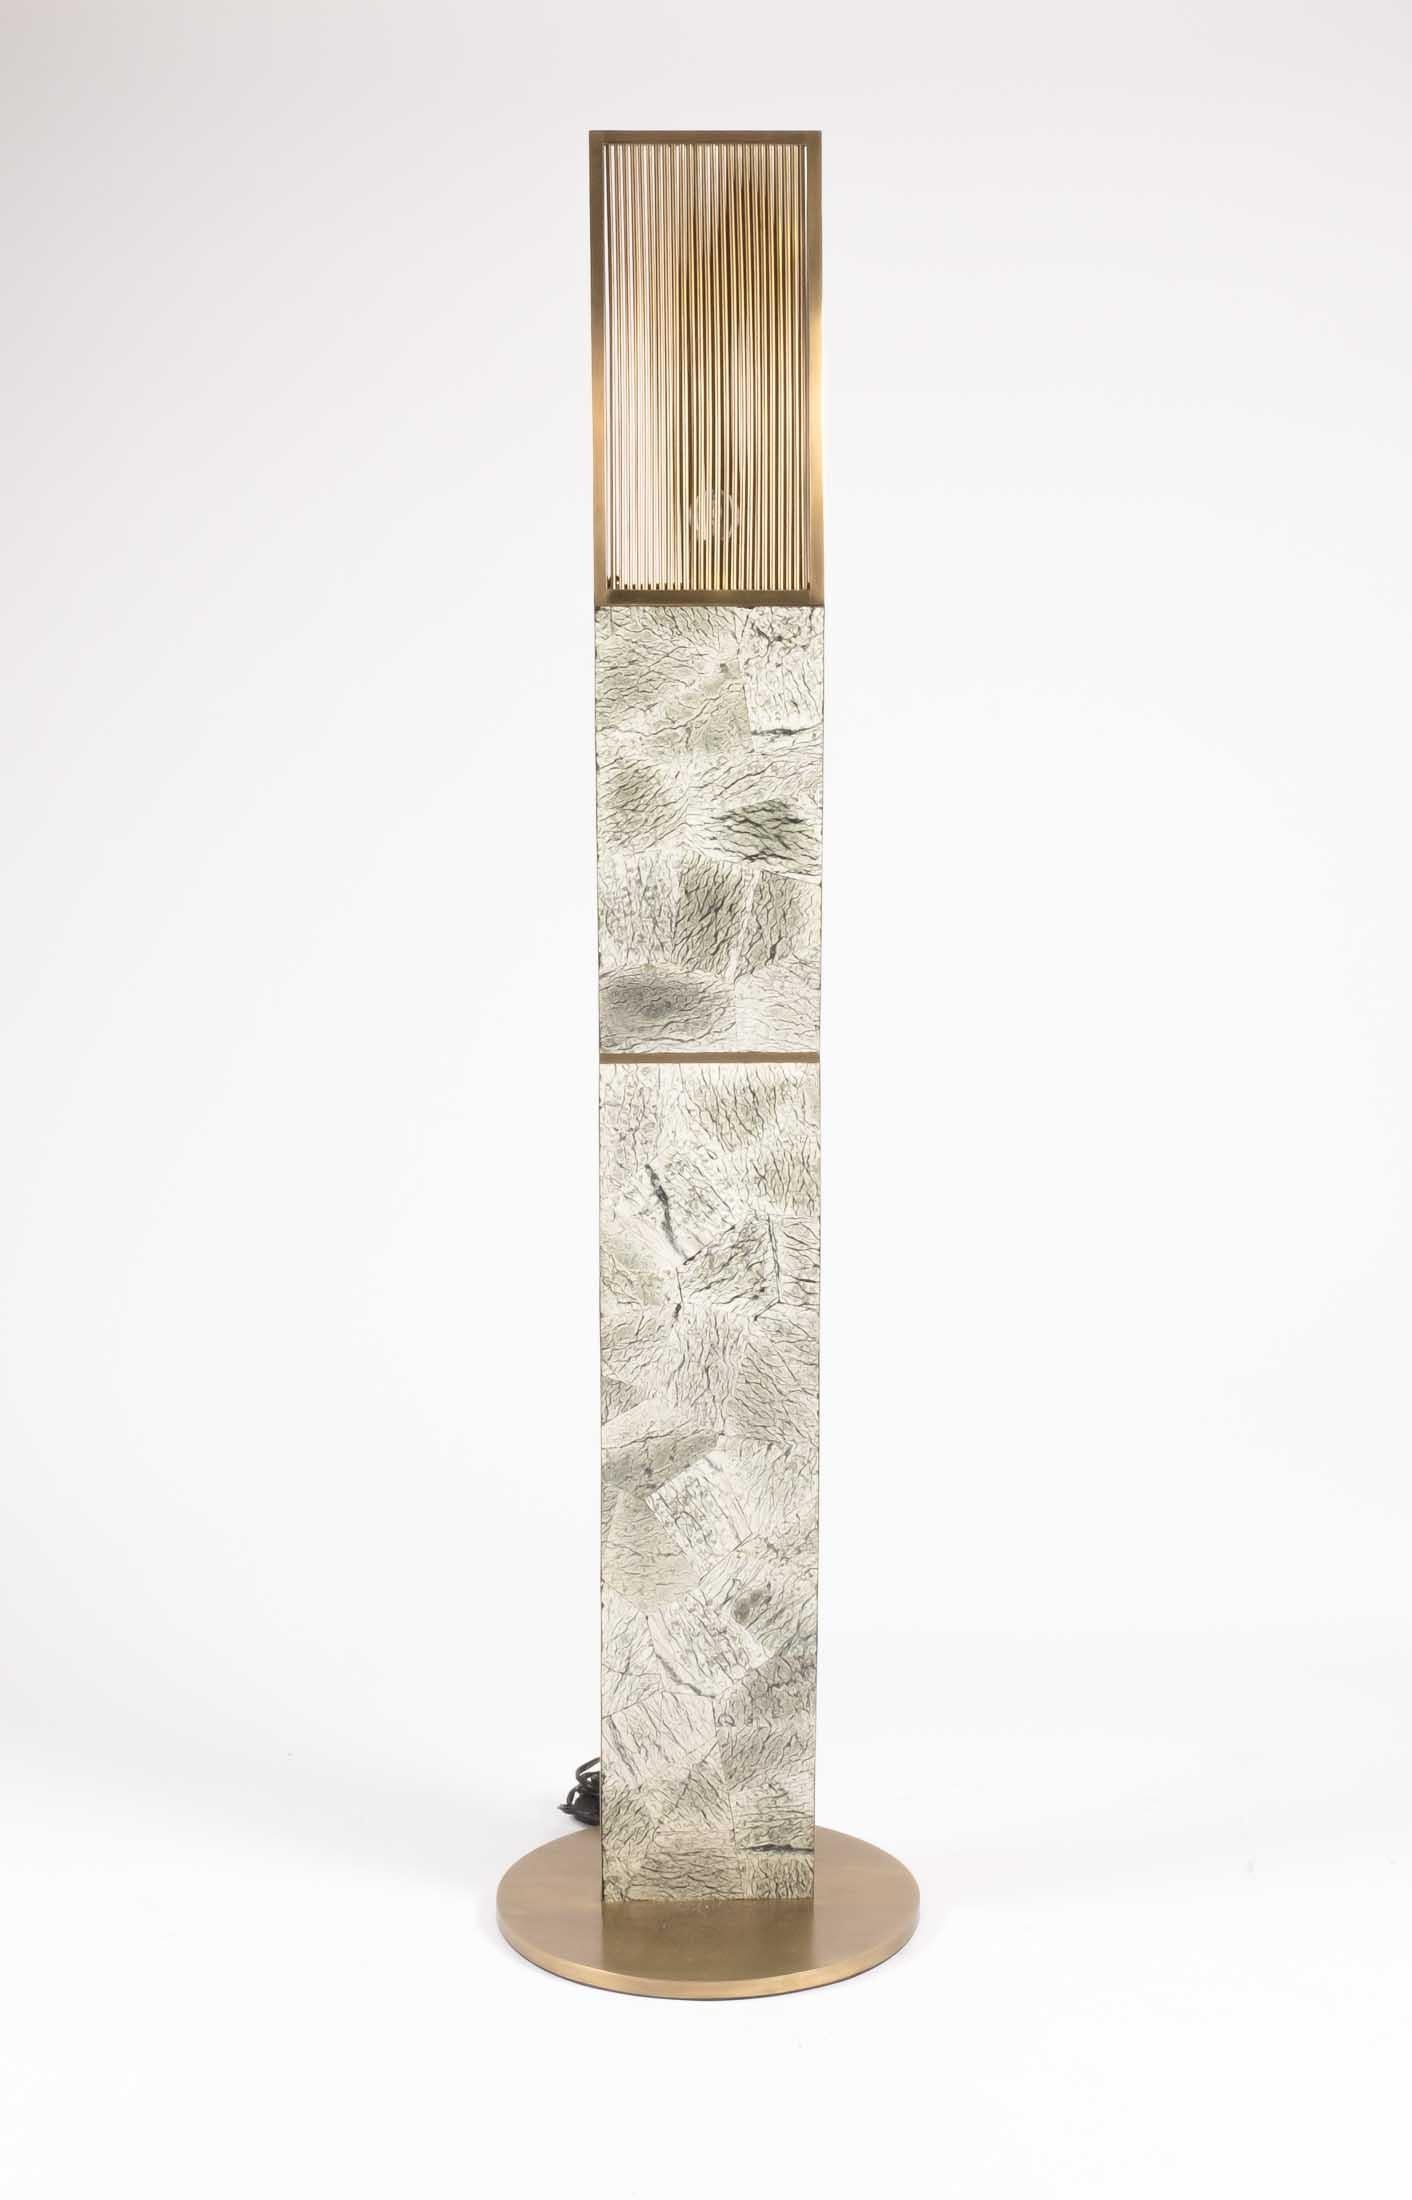 Le grand lampadaire à hélice Kifu Paris en pierre de Baguio est une pièce d'éclairage sculpturale et existe en deux autres tailles vendues séparément (images à la fin de la diapositive). Les couleurs de la pierre de Baguio sont dans les tonalités de